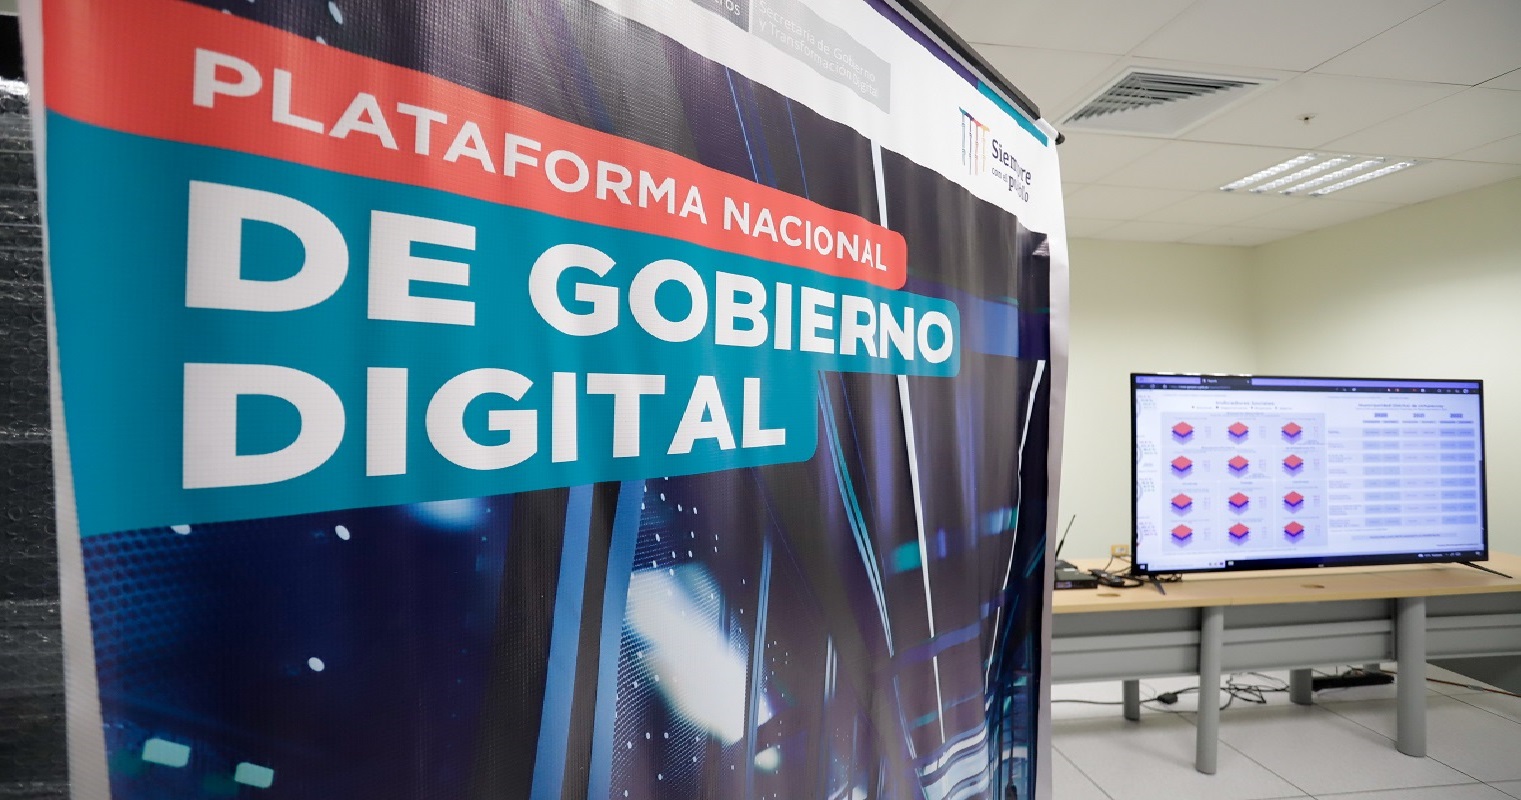 PCM Plataforma Nacional de Gobierno Digital fortalecerá la transparencia, confiabilidad y trazabilidad; acelerando la digitalización del país.